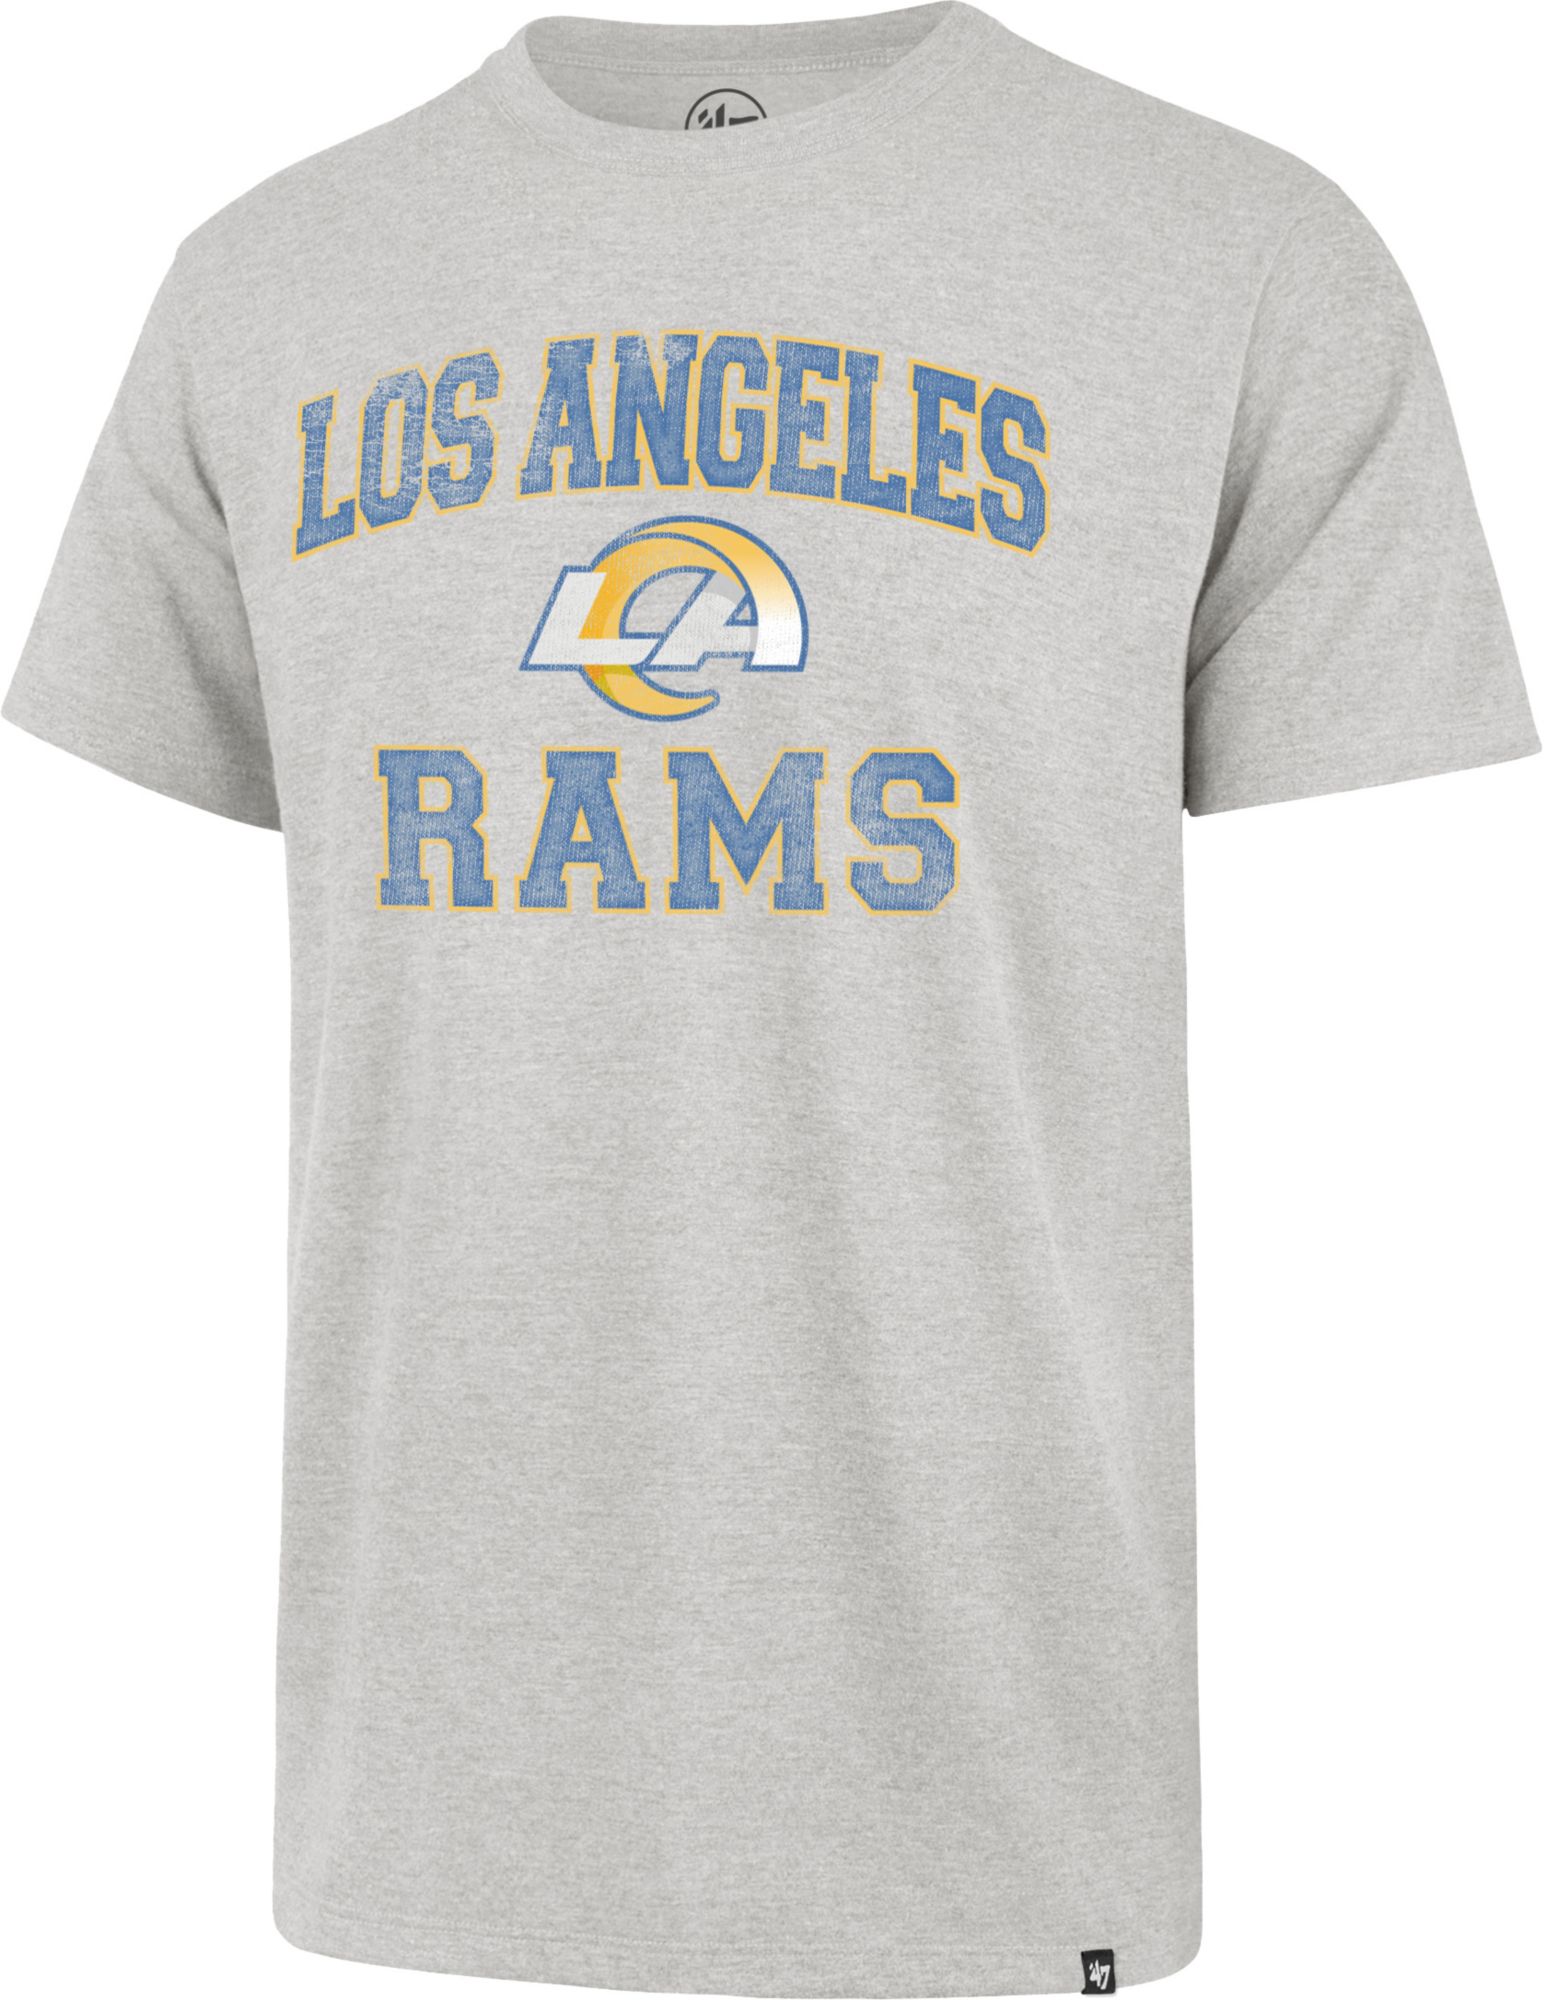 Rams men's shirt